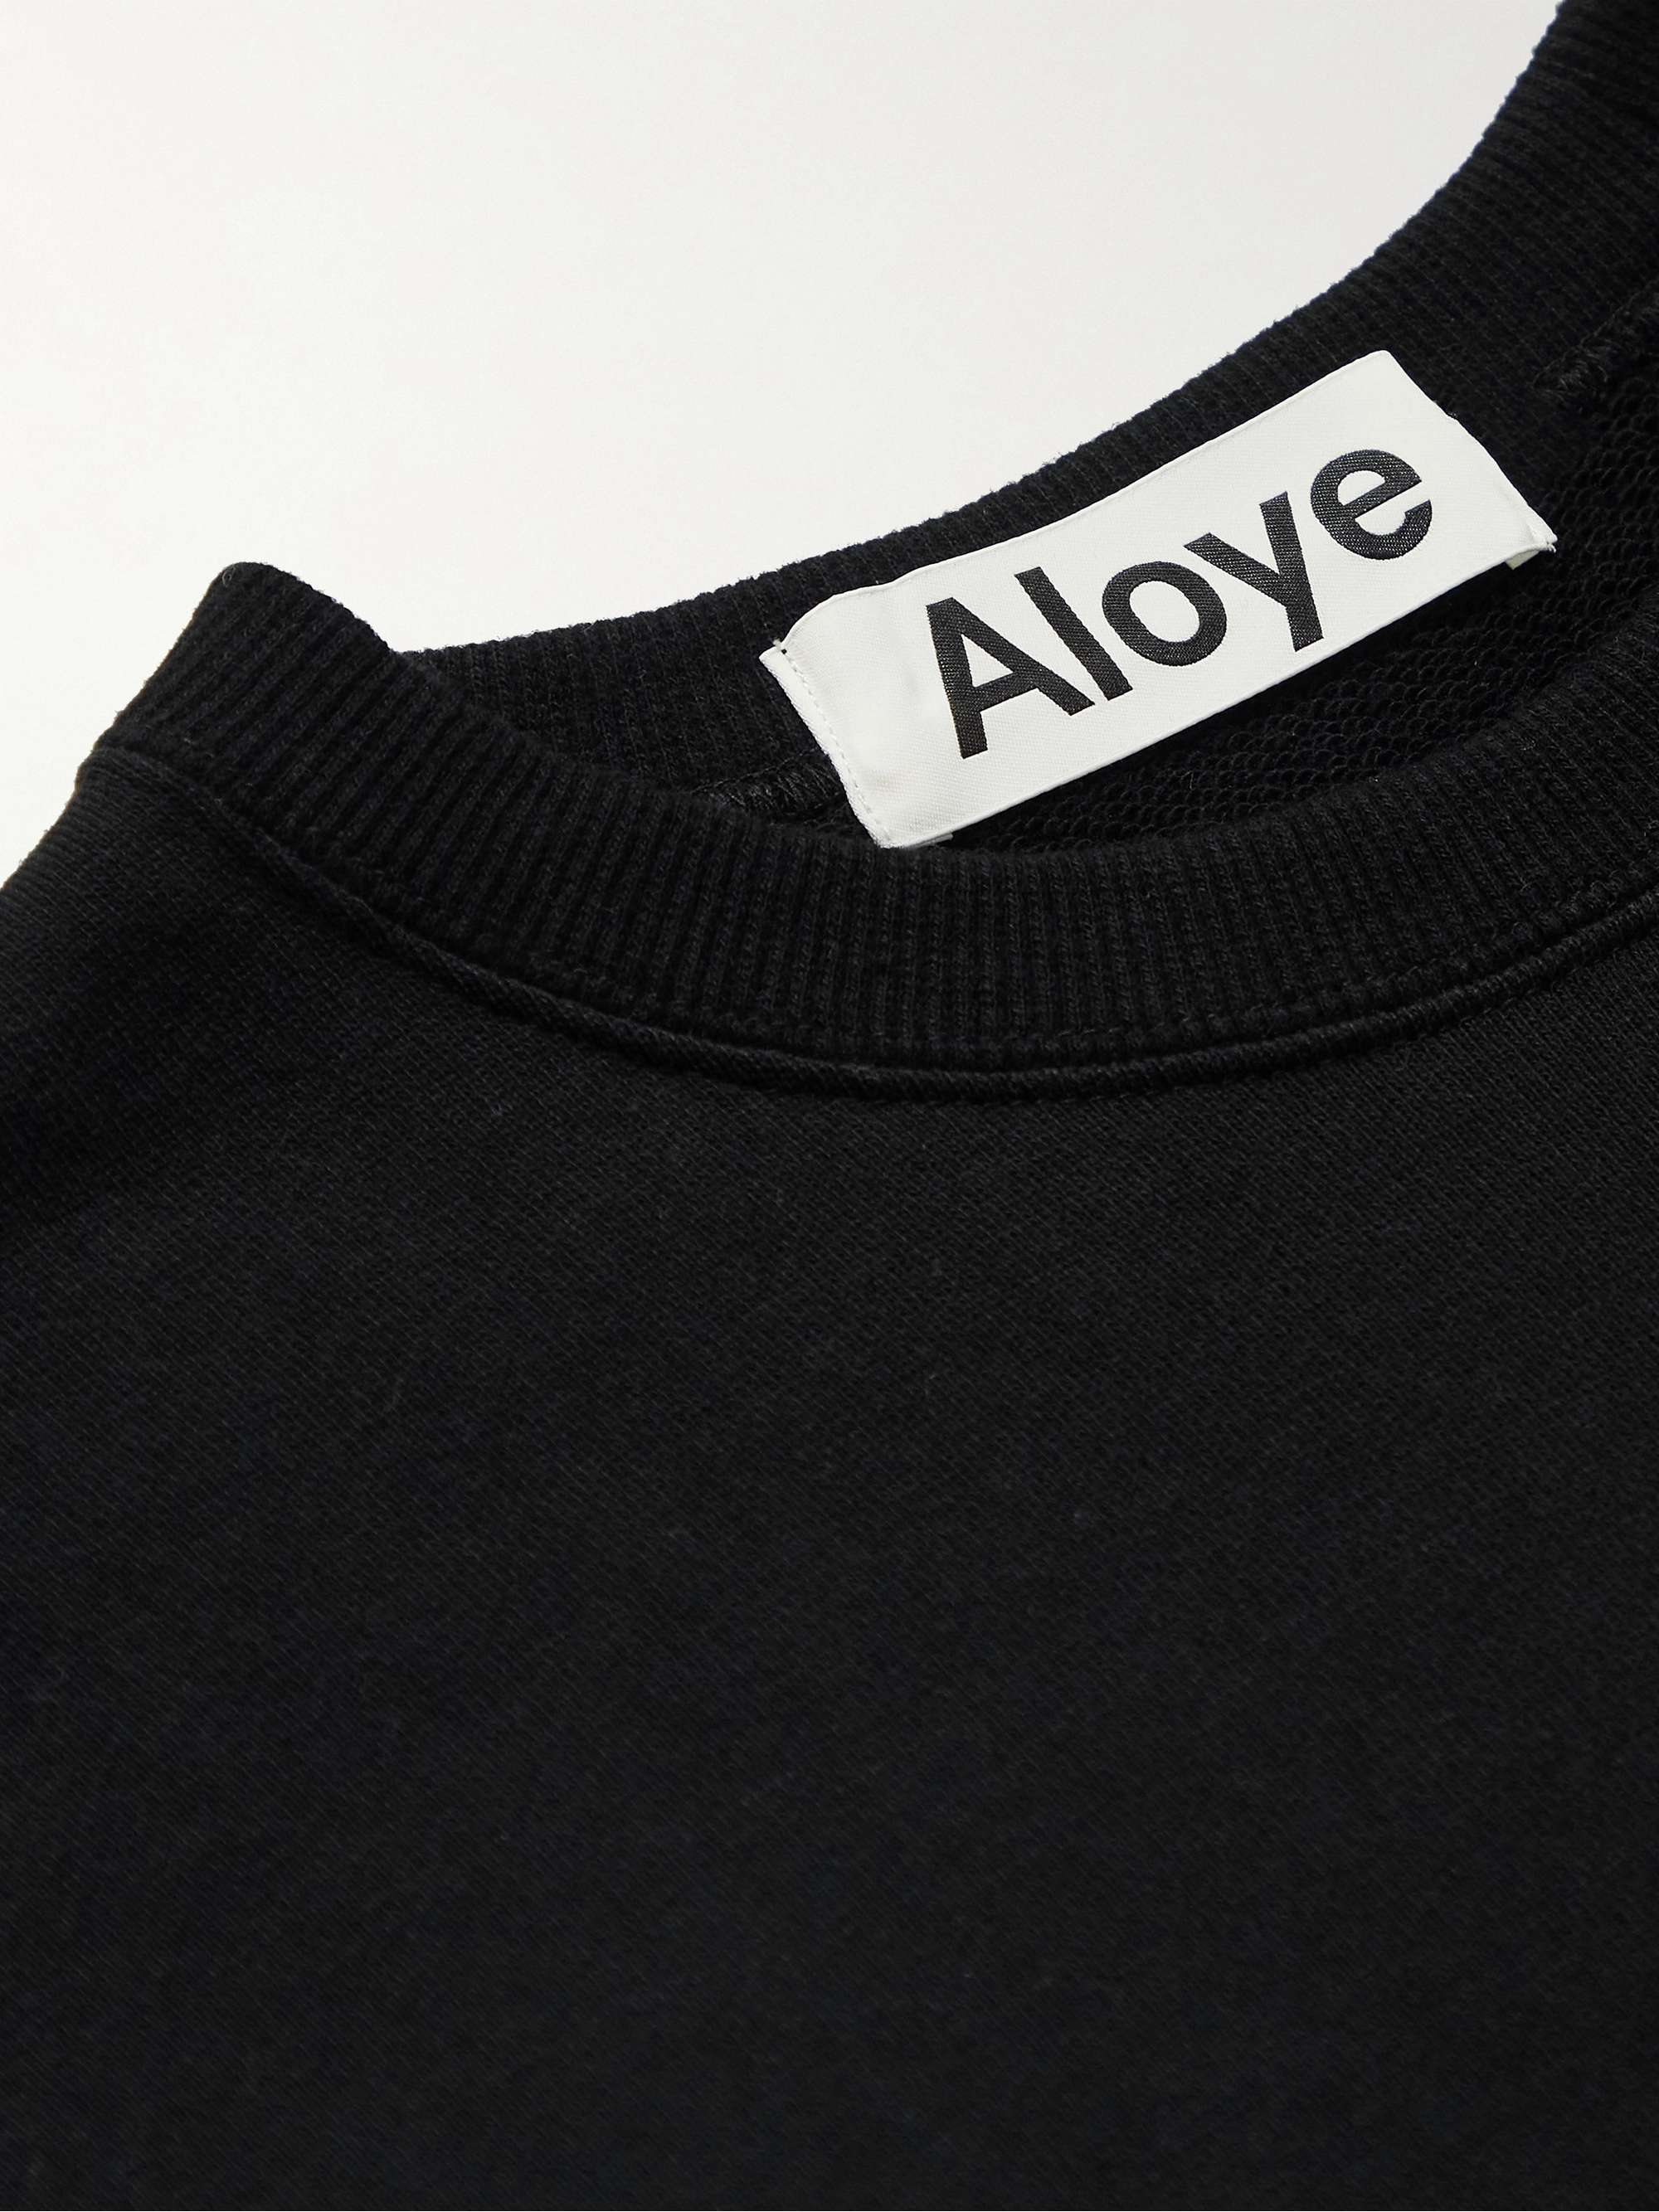 ALOYE Panelled Stretch-Knit and Cotton-Jersey Sweatshirt